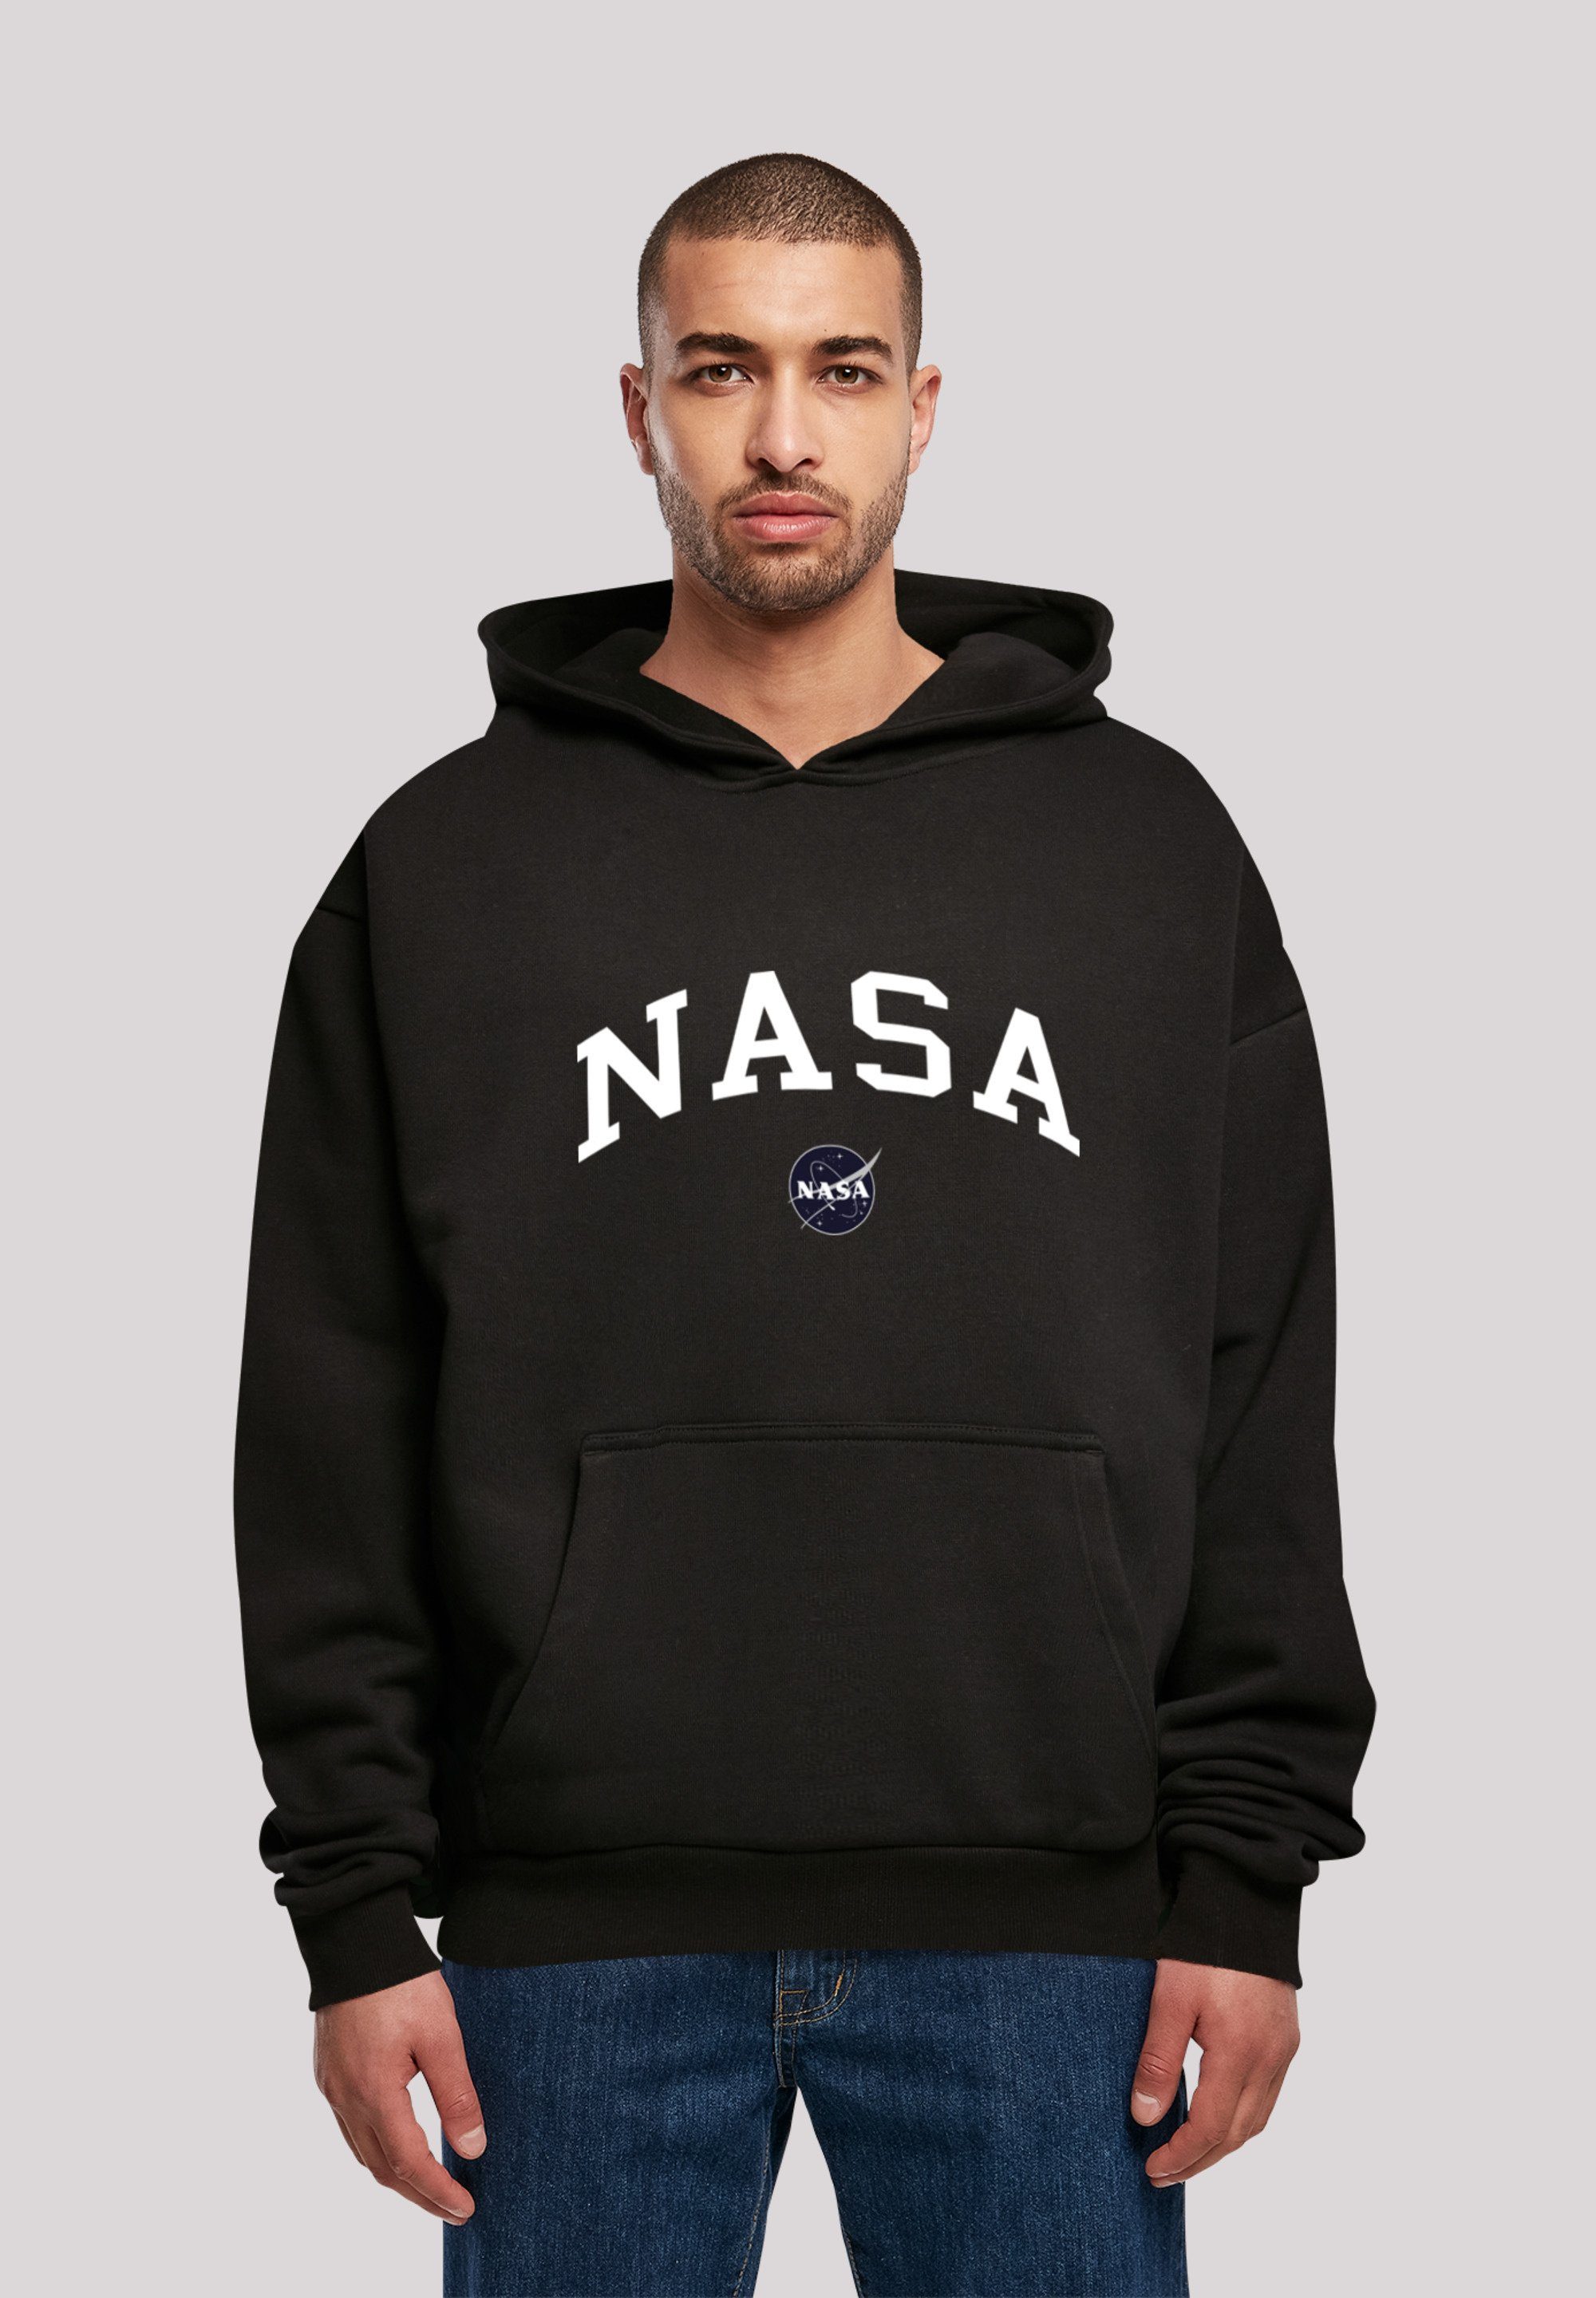 kleiner Print, Oversize F4NT4STIC Größe Logo bestellen Sweatshirt Fällt NASA weit bitte aus, eine Premium Collegiate